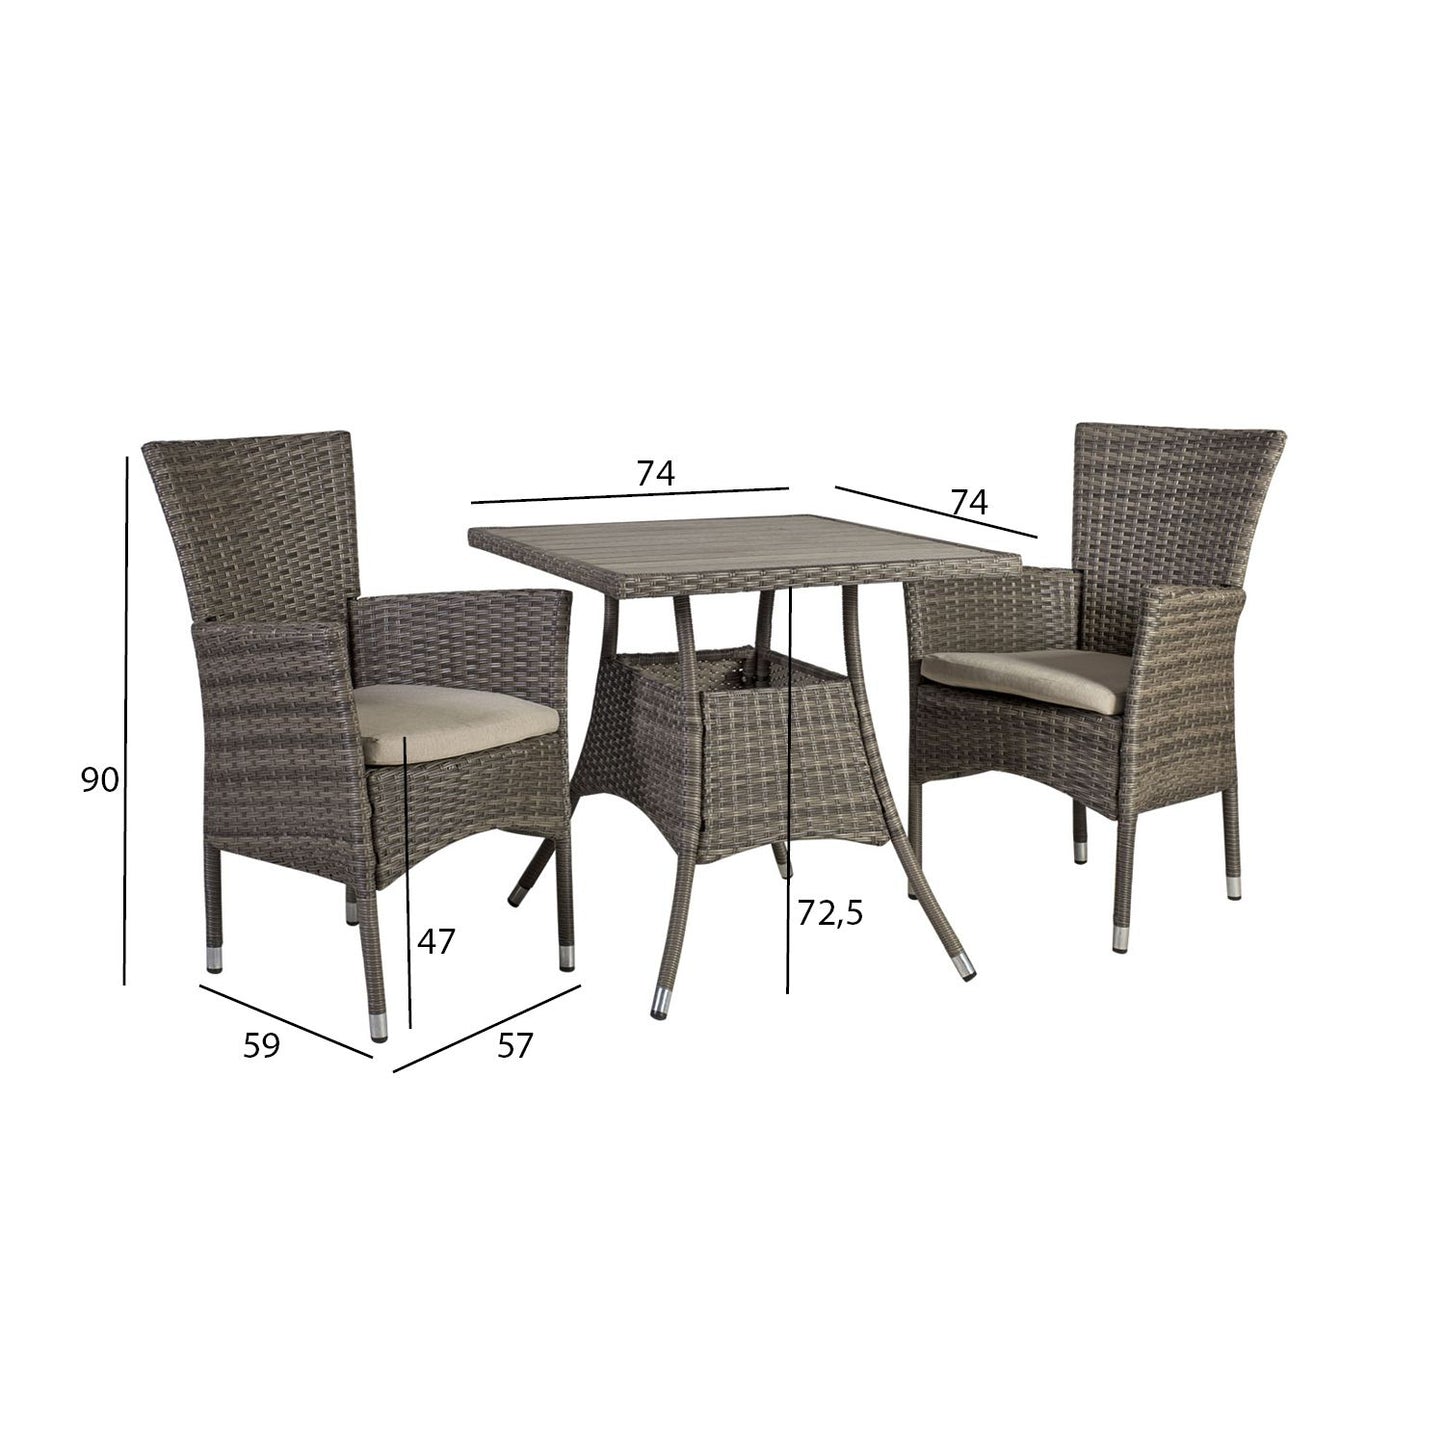 Sodo baldų komplektas PALOMA: stalas ir 2 kėdės, pilkšvai rudos spalvos.